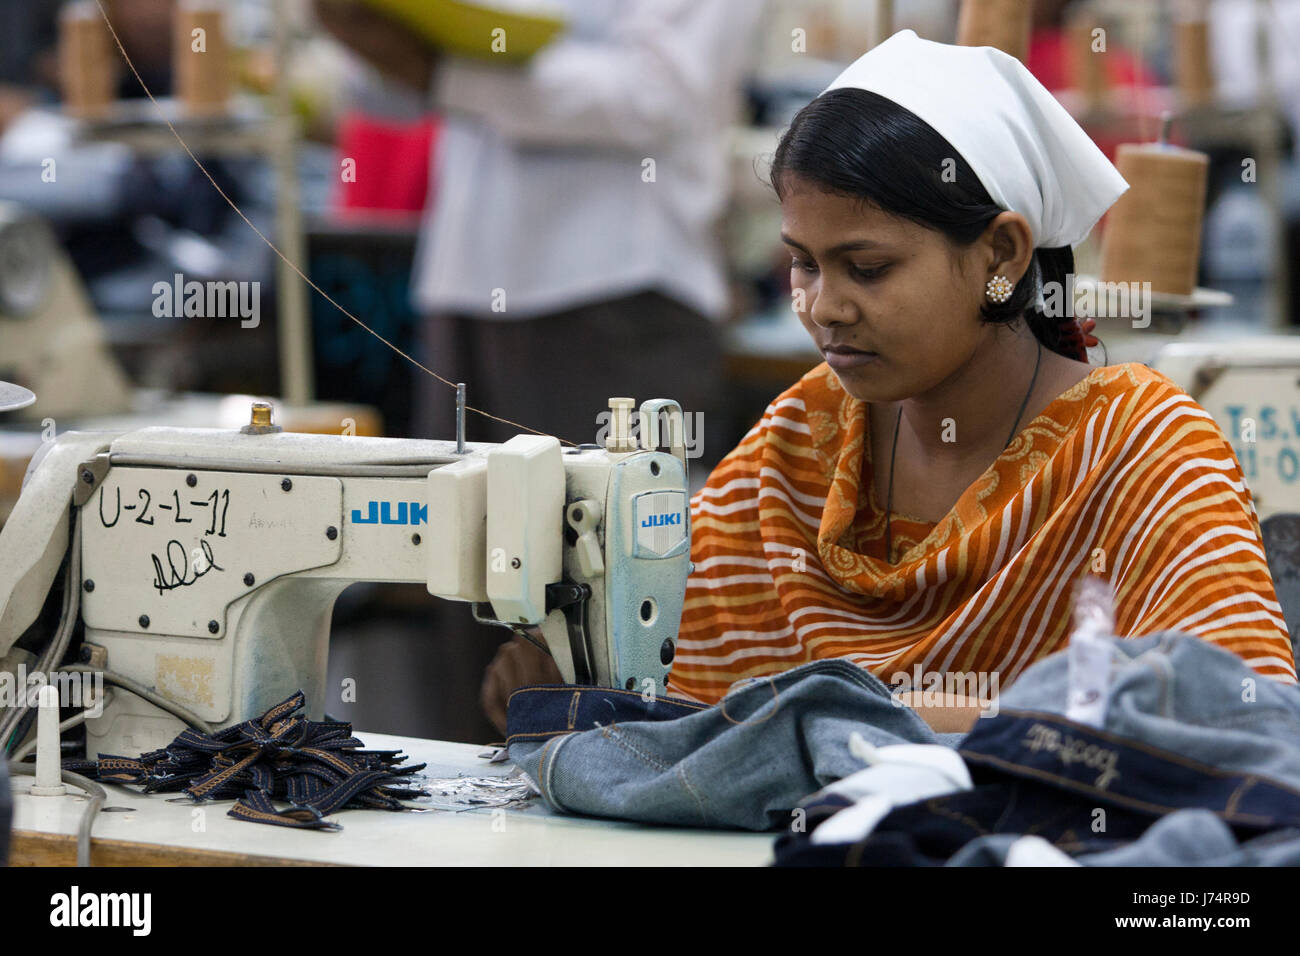 Prendas trabajan en la fábrica. Dhaka, Bangladesh. Foto de stock